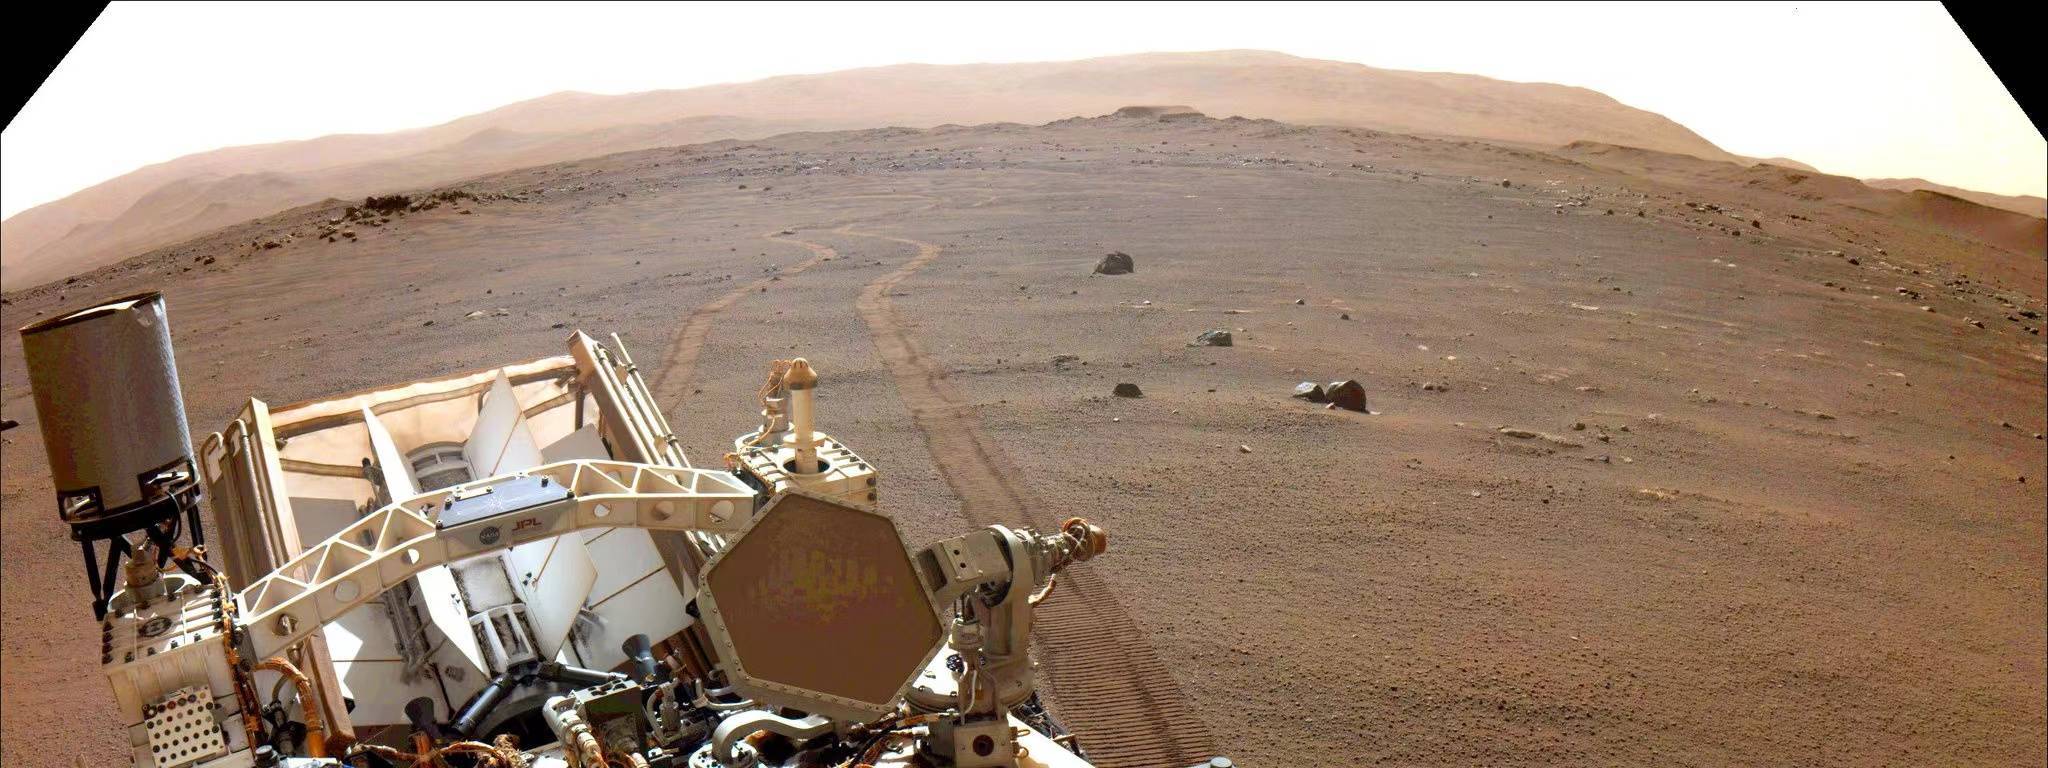 毅力号火星车捕捉到的声音揭示：火星上声音传播速度比地球慢 